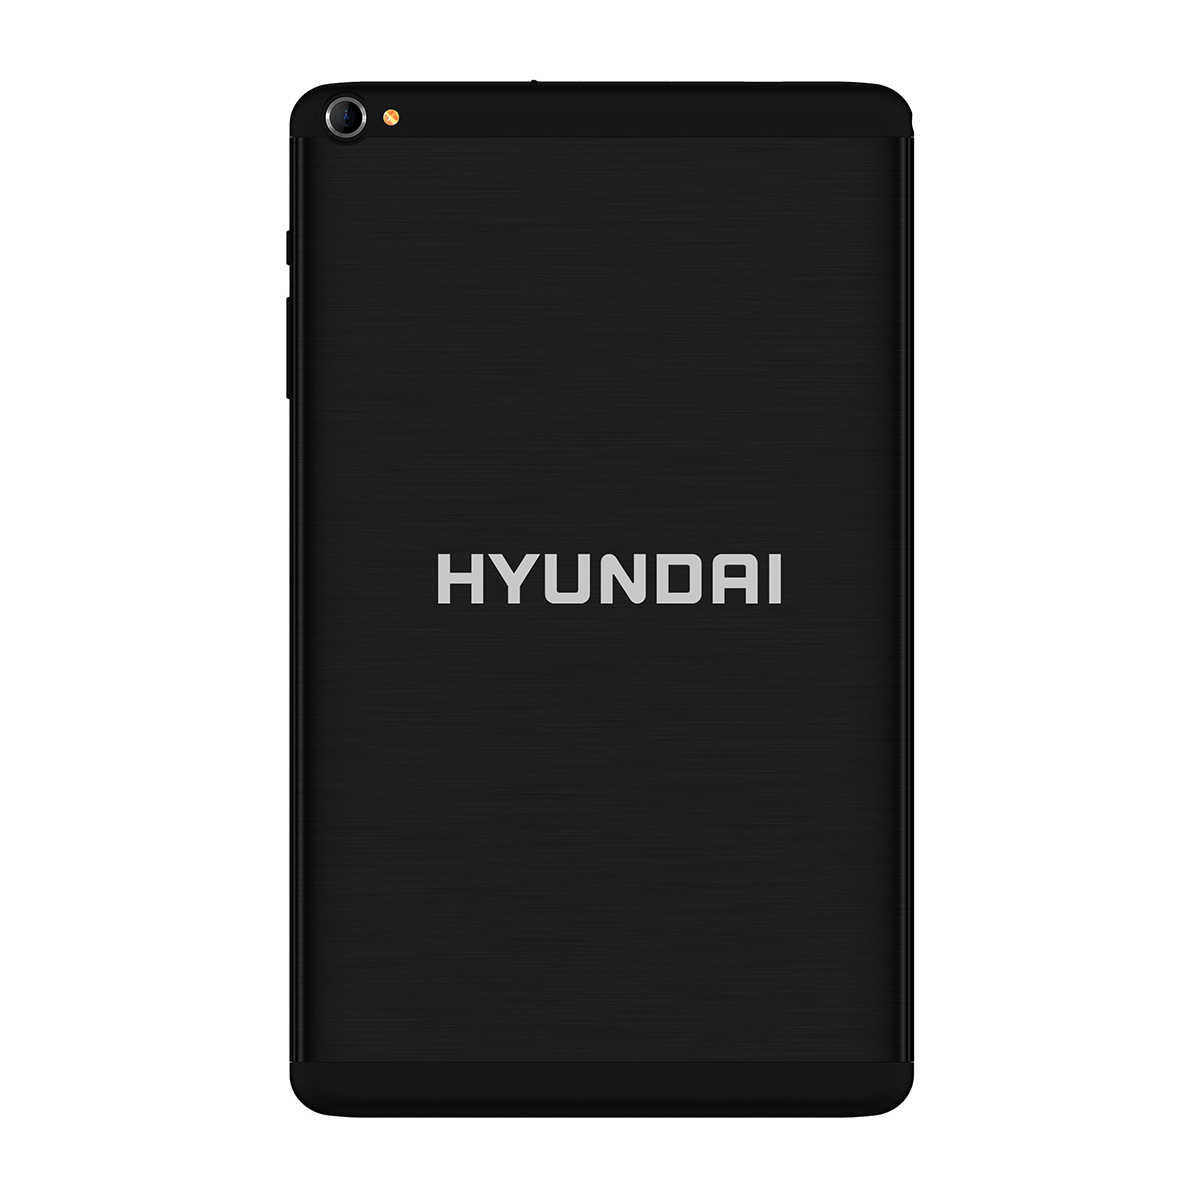 Tablet Hyundai Hytab Plus 8LAB1 - 8